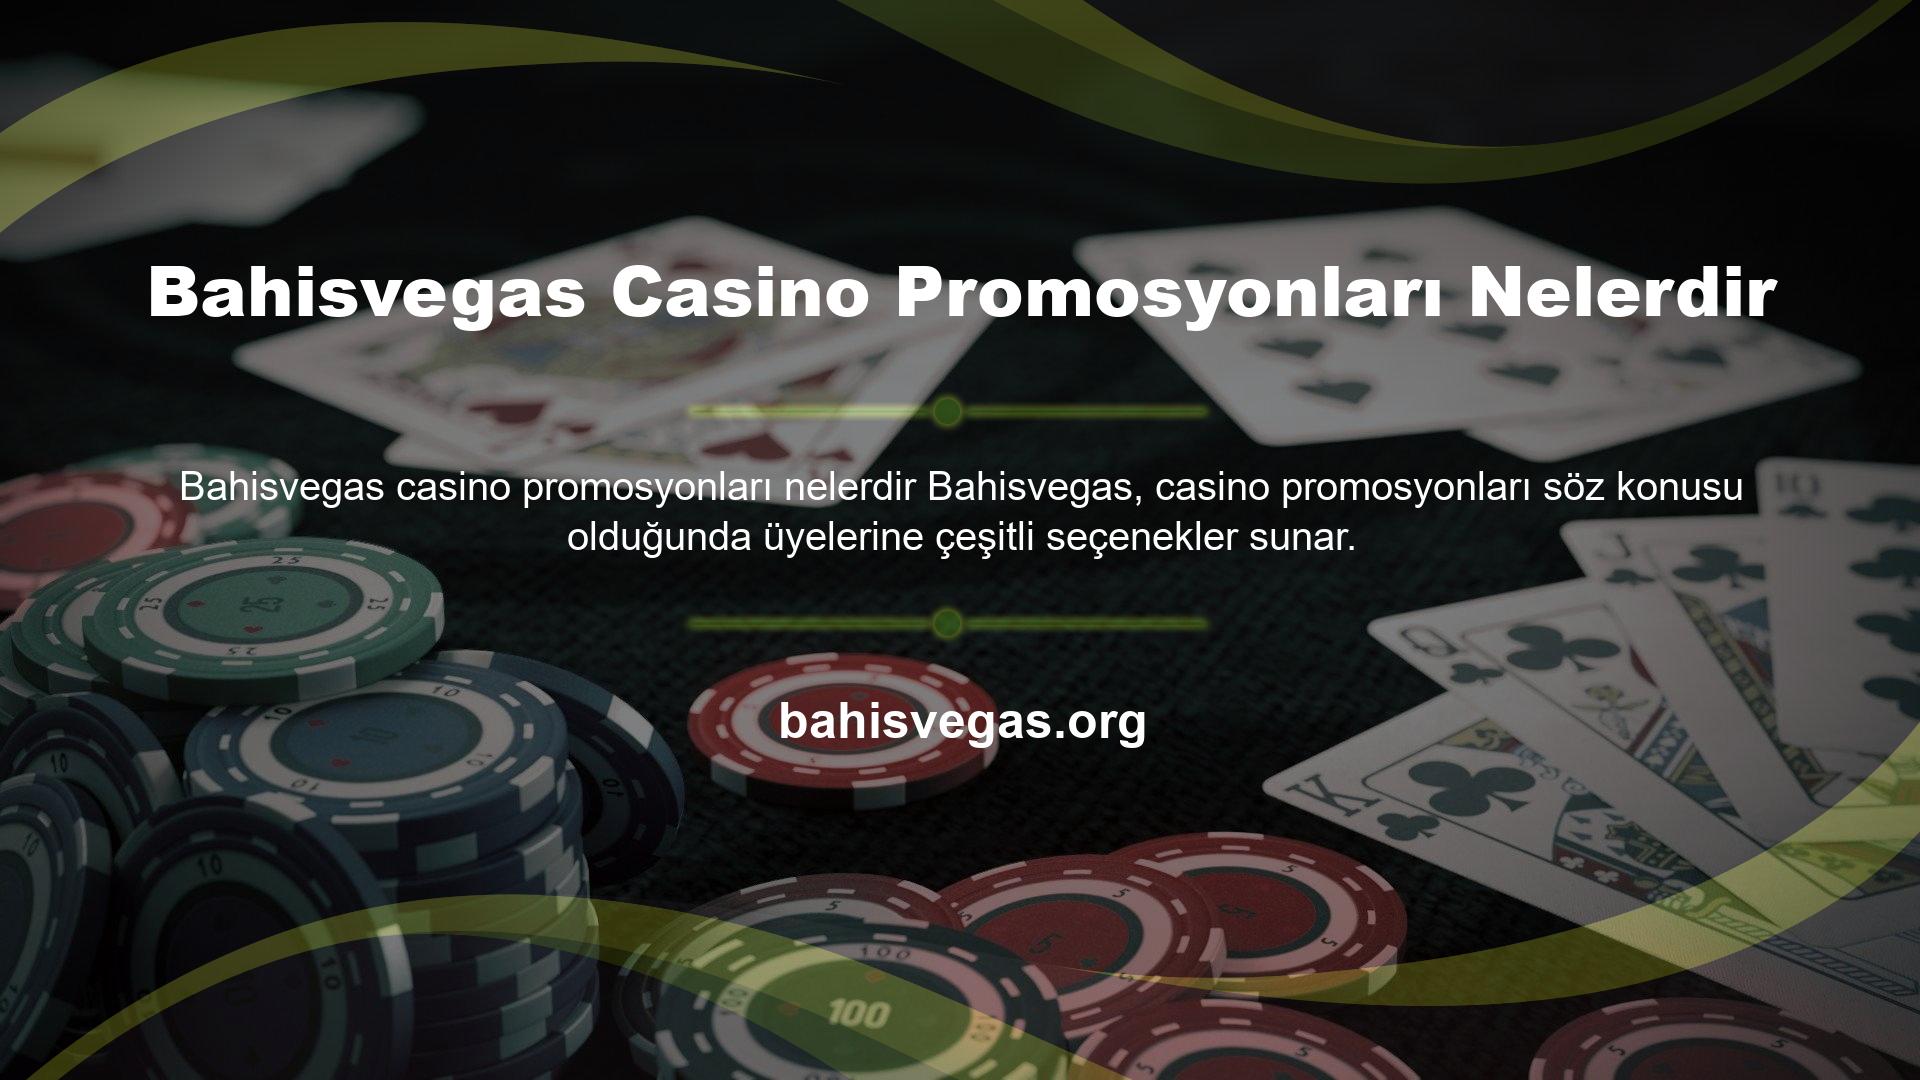 Bahisvegas Casino Promosyonları Nelerdir